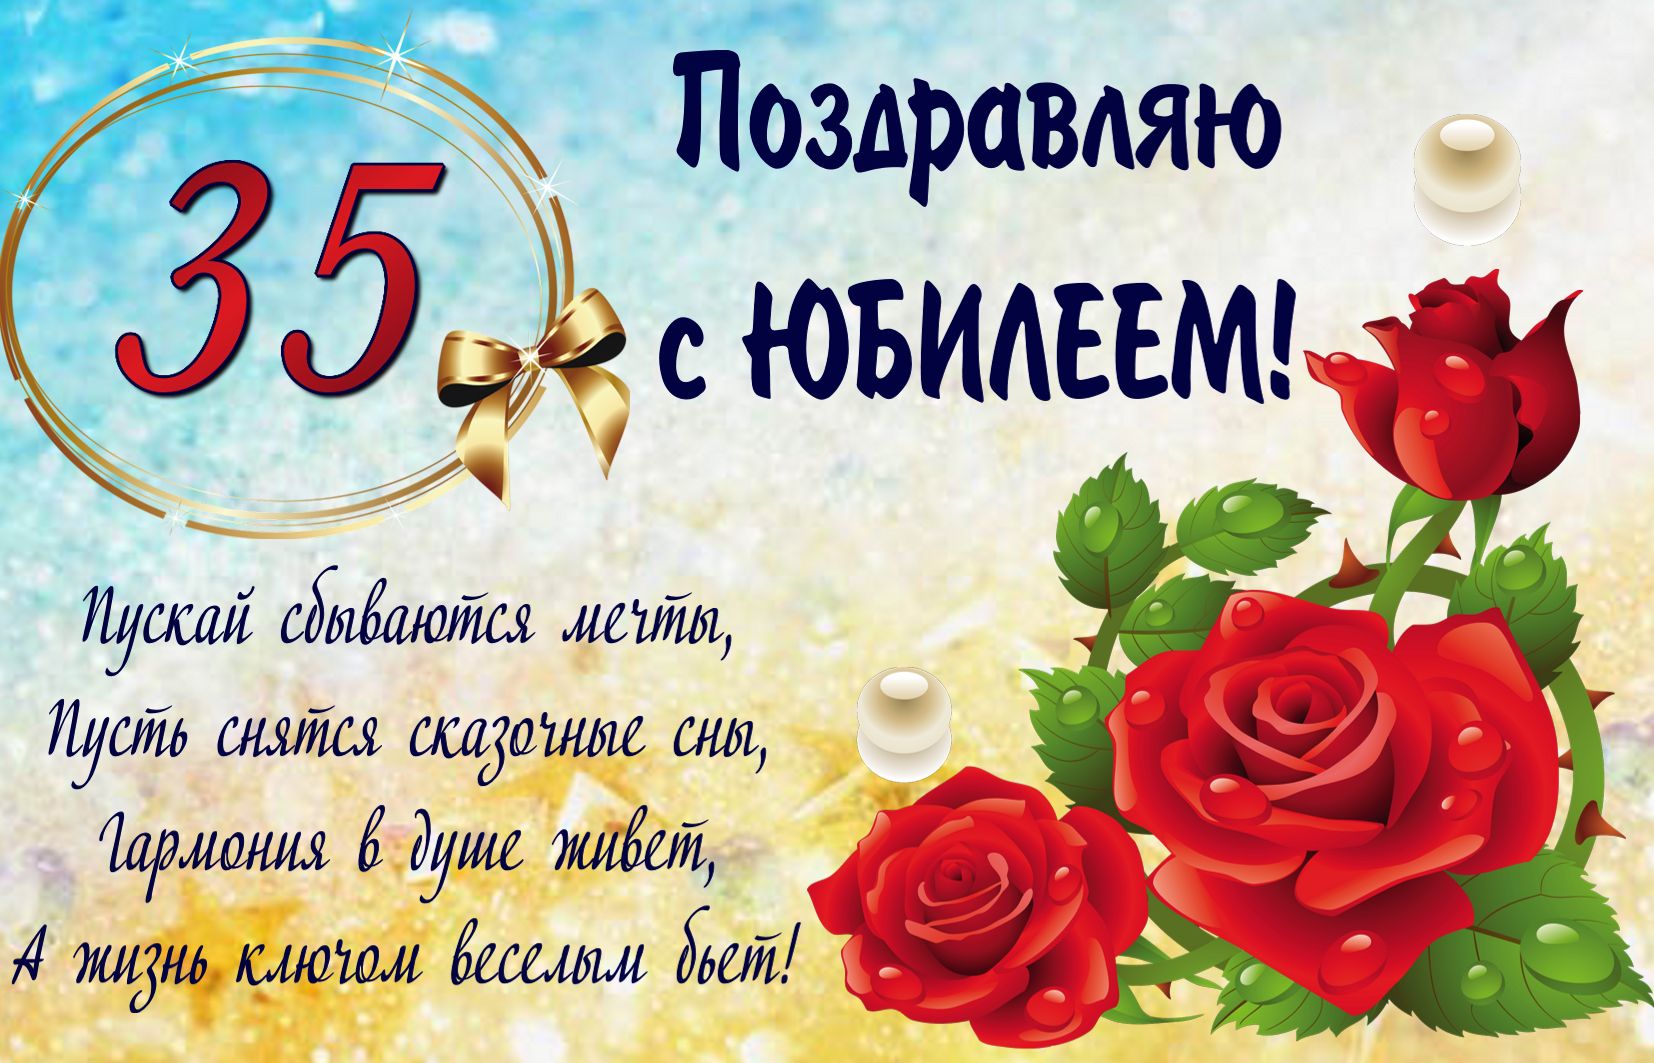 Пожелание на 35 День рождения с красивой розой